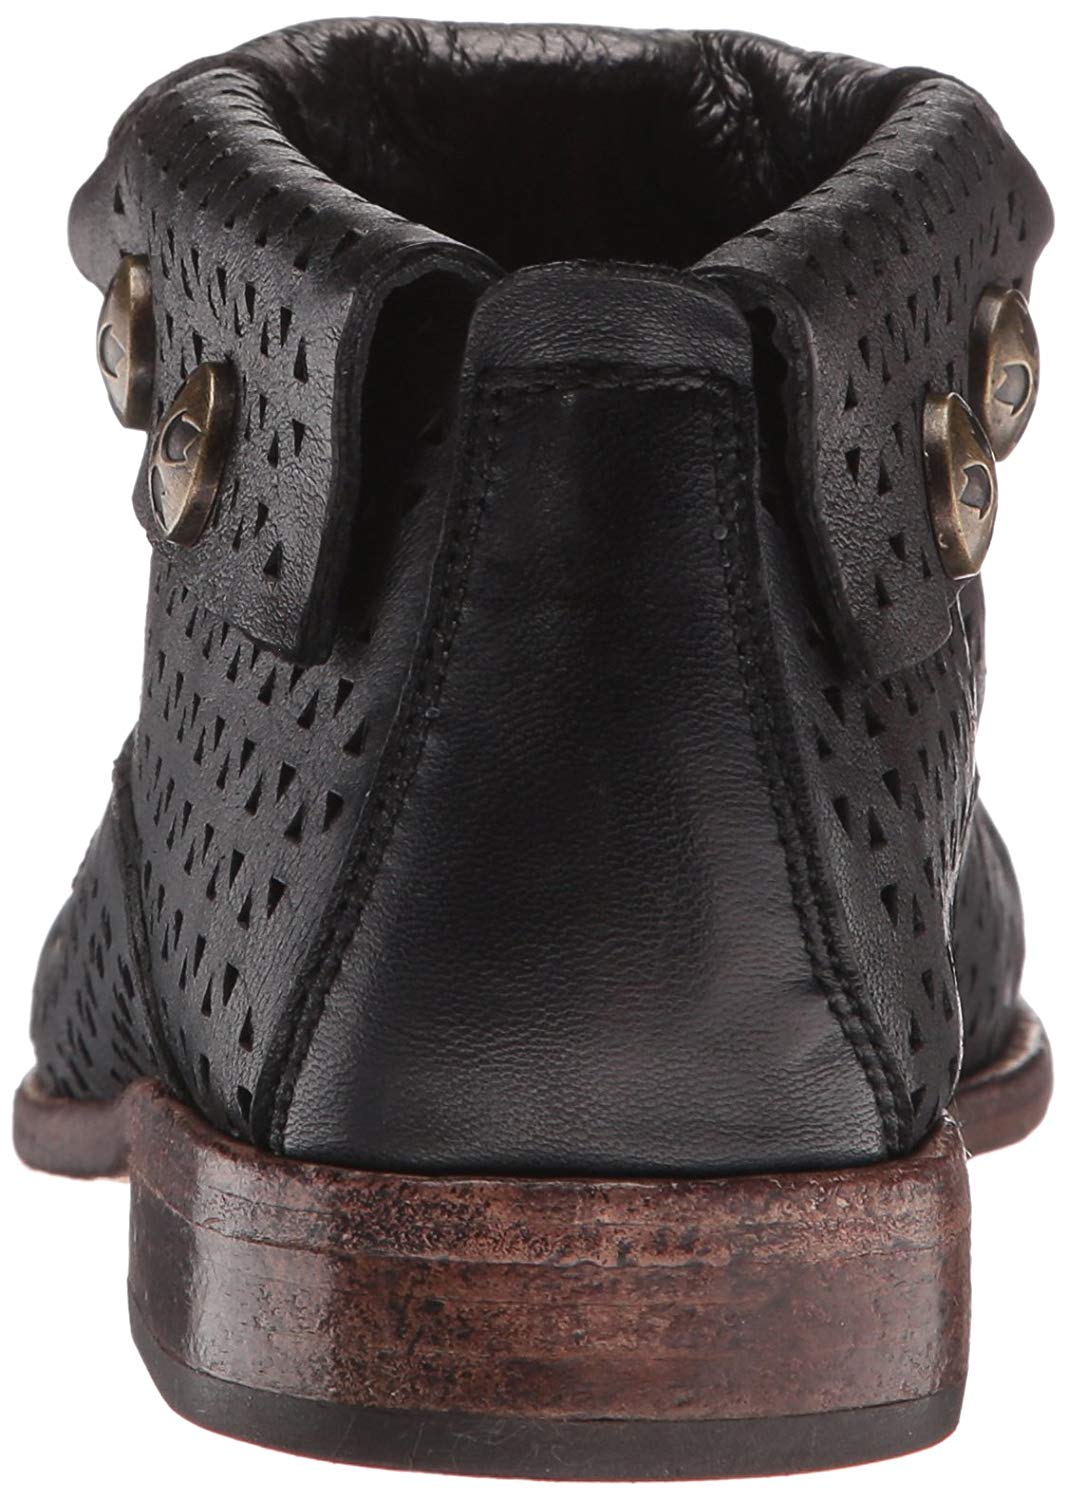 PATRICIA NASH WOMENS Sabrina Leather Closed Toe Ankle Fashion Boots $27 ...